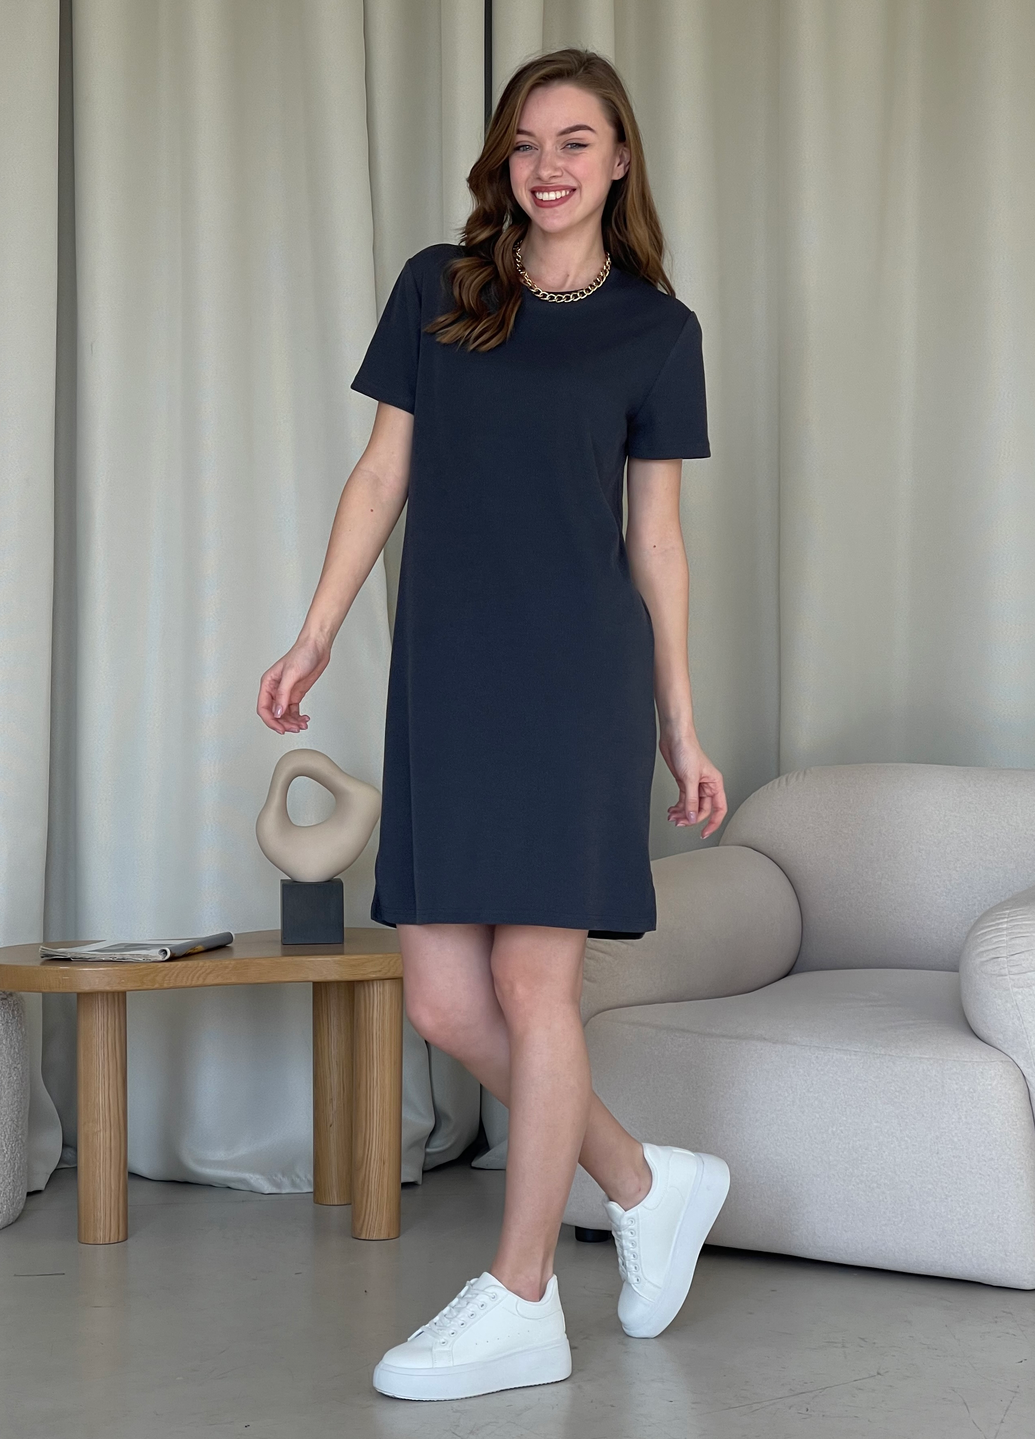 Купить Платье-футболка до колена в рубчик серое Merlini Милан 700000150 размер 42-44 (S-M) в интернет-магазине